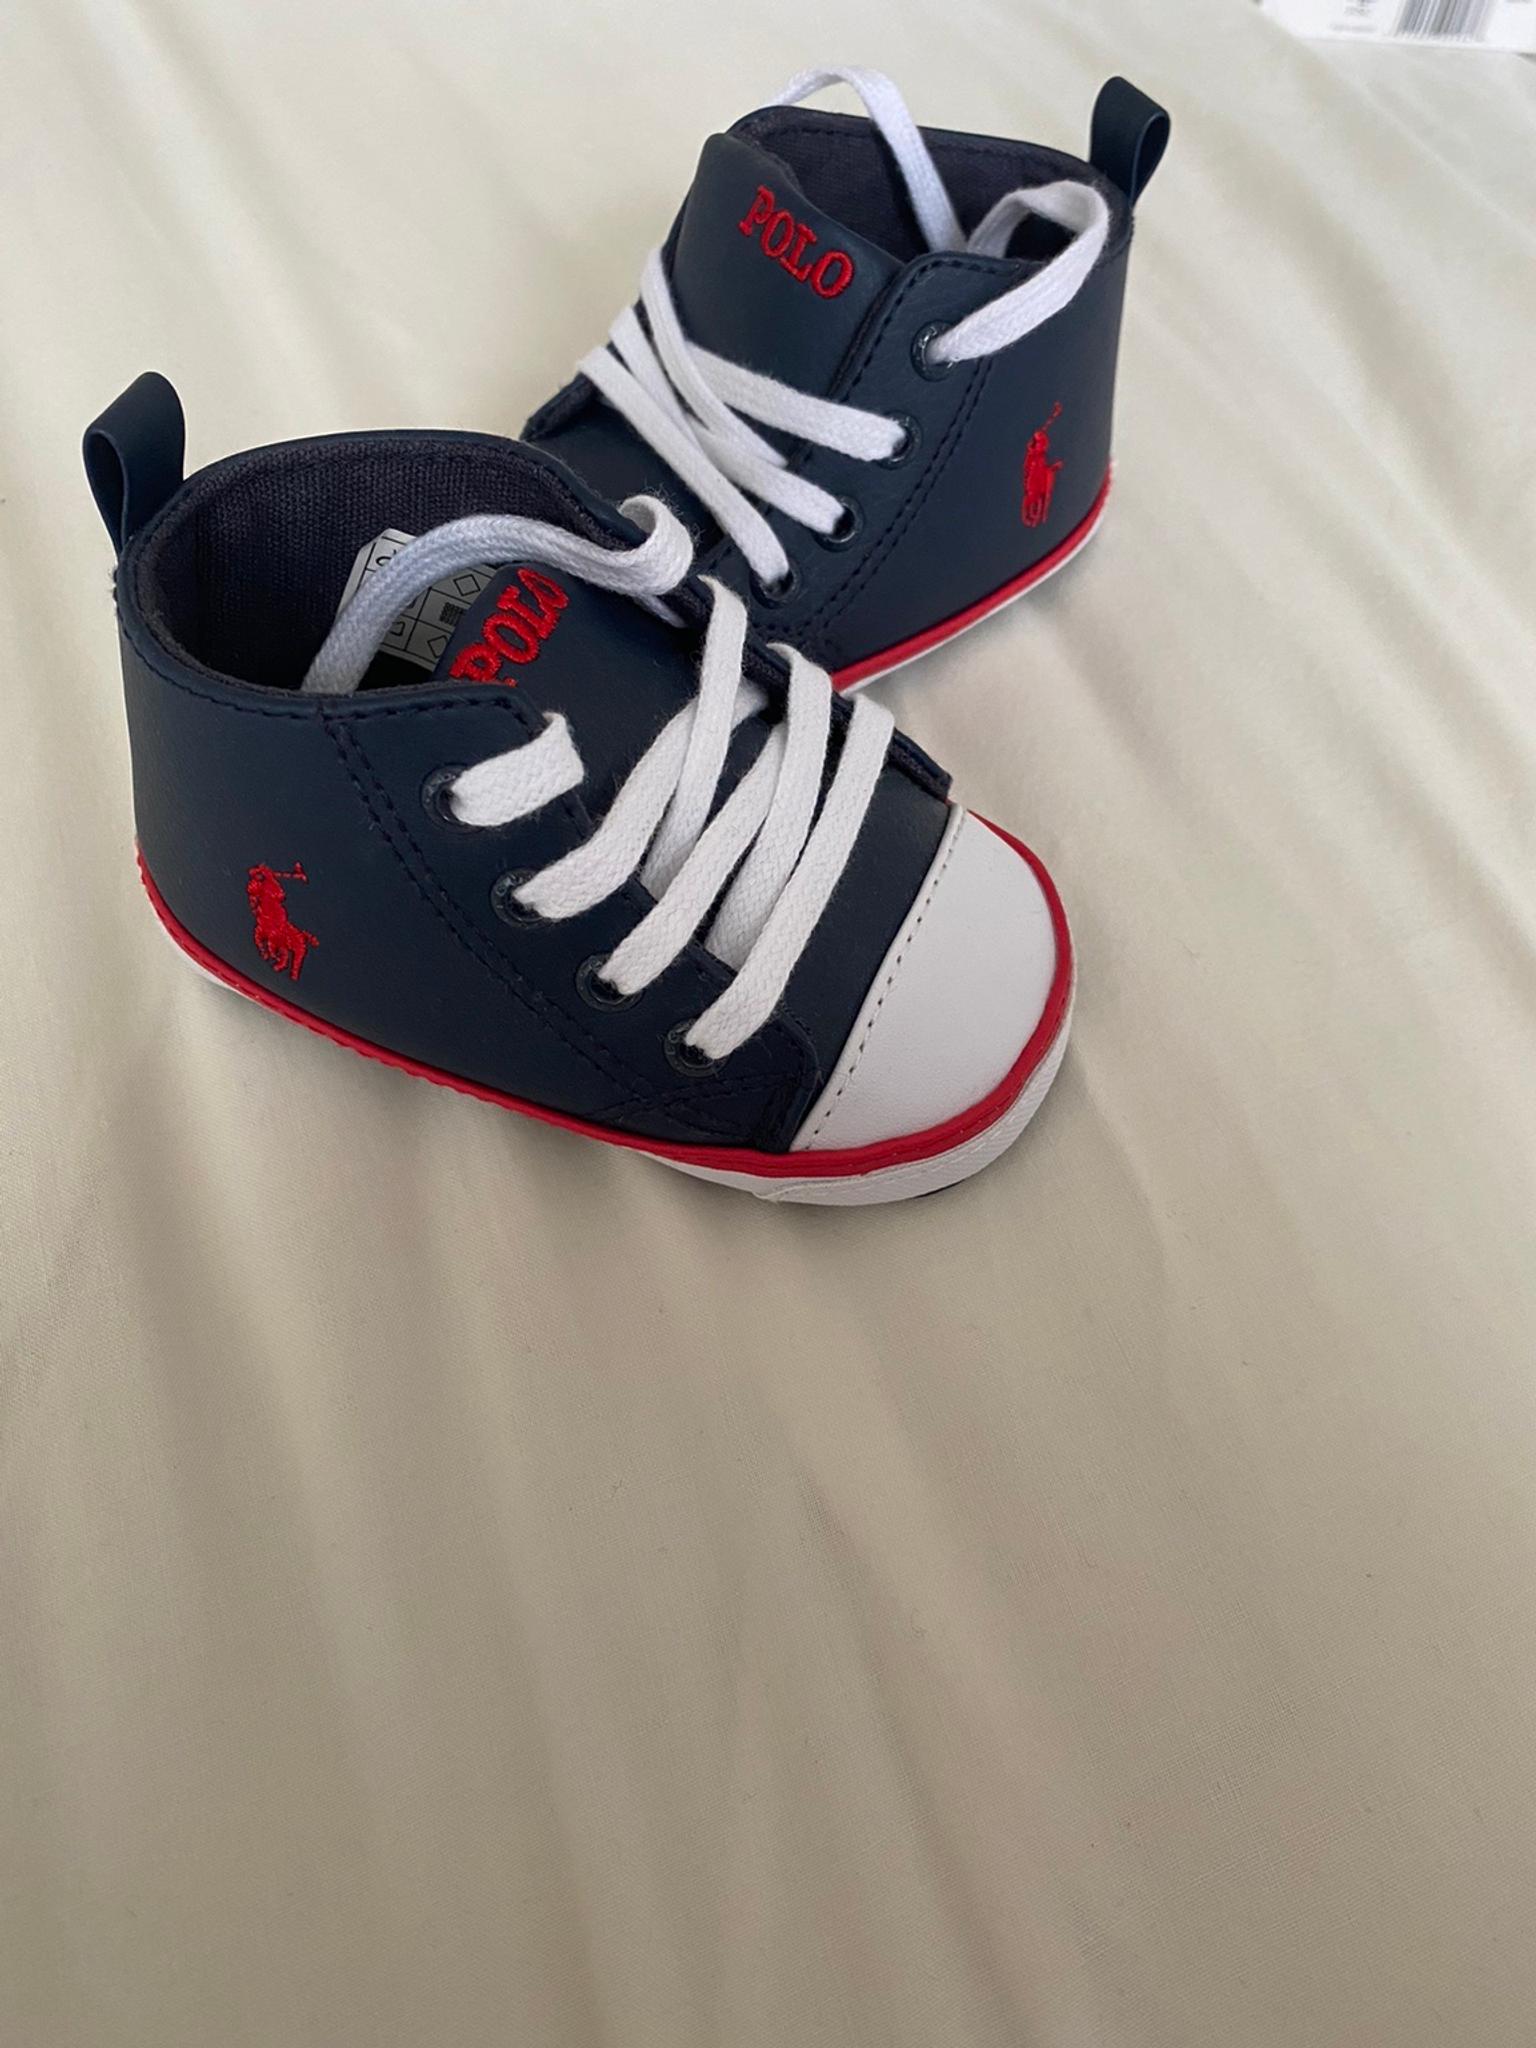 Ralph Lauren baby shoes size 2.5 in 